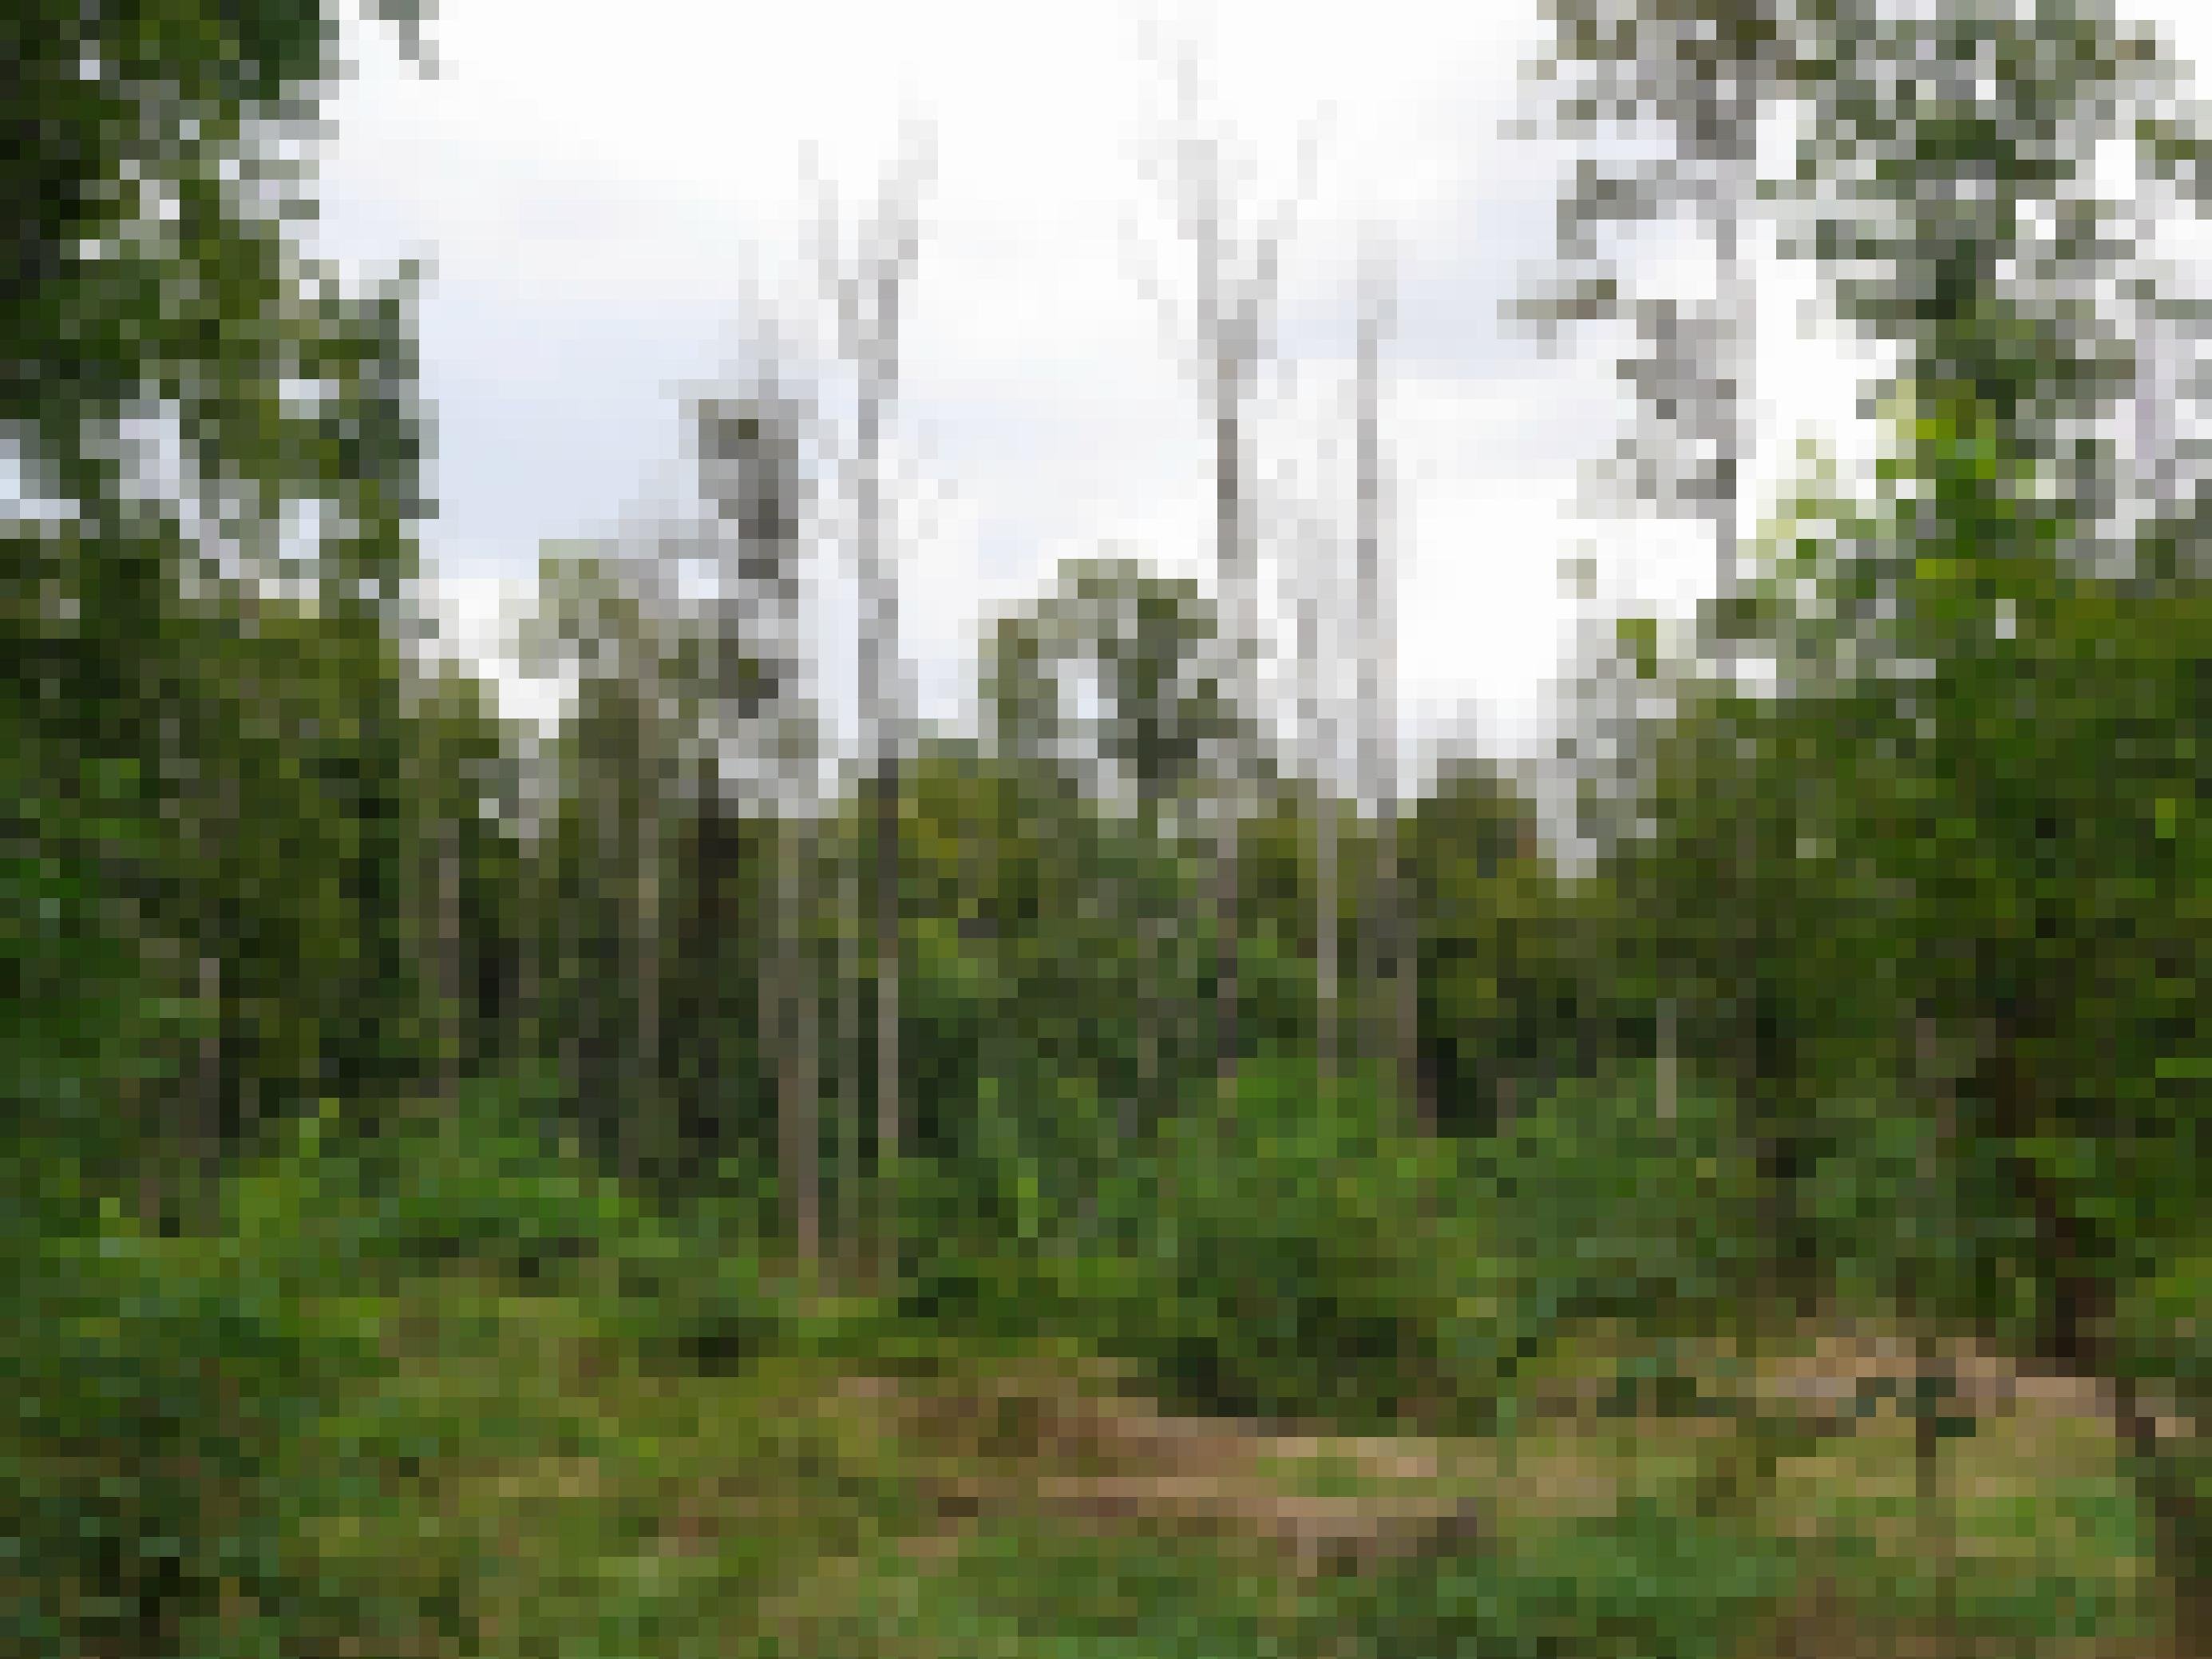 tote Baume ohne rinde stehen mit grauen Stämmen in einem Wald